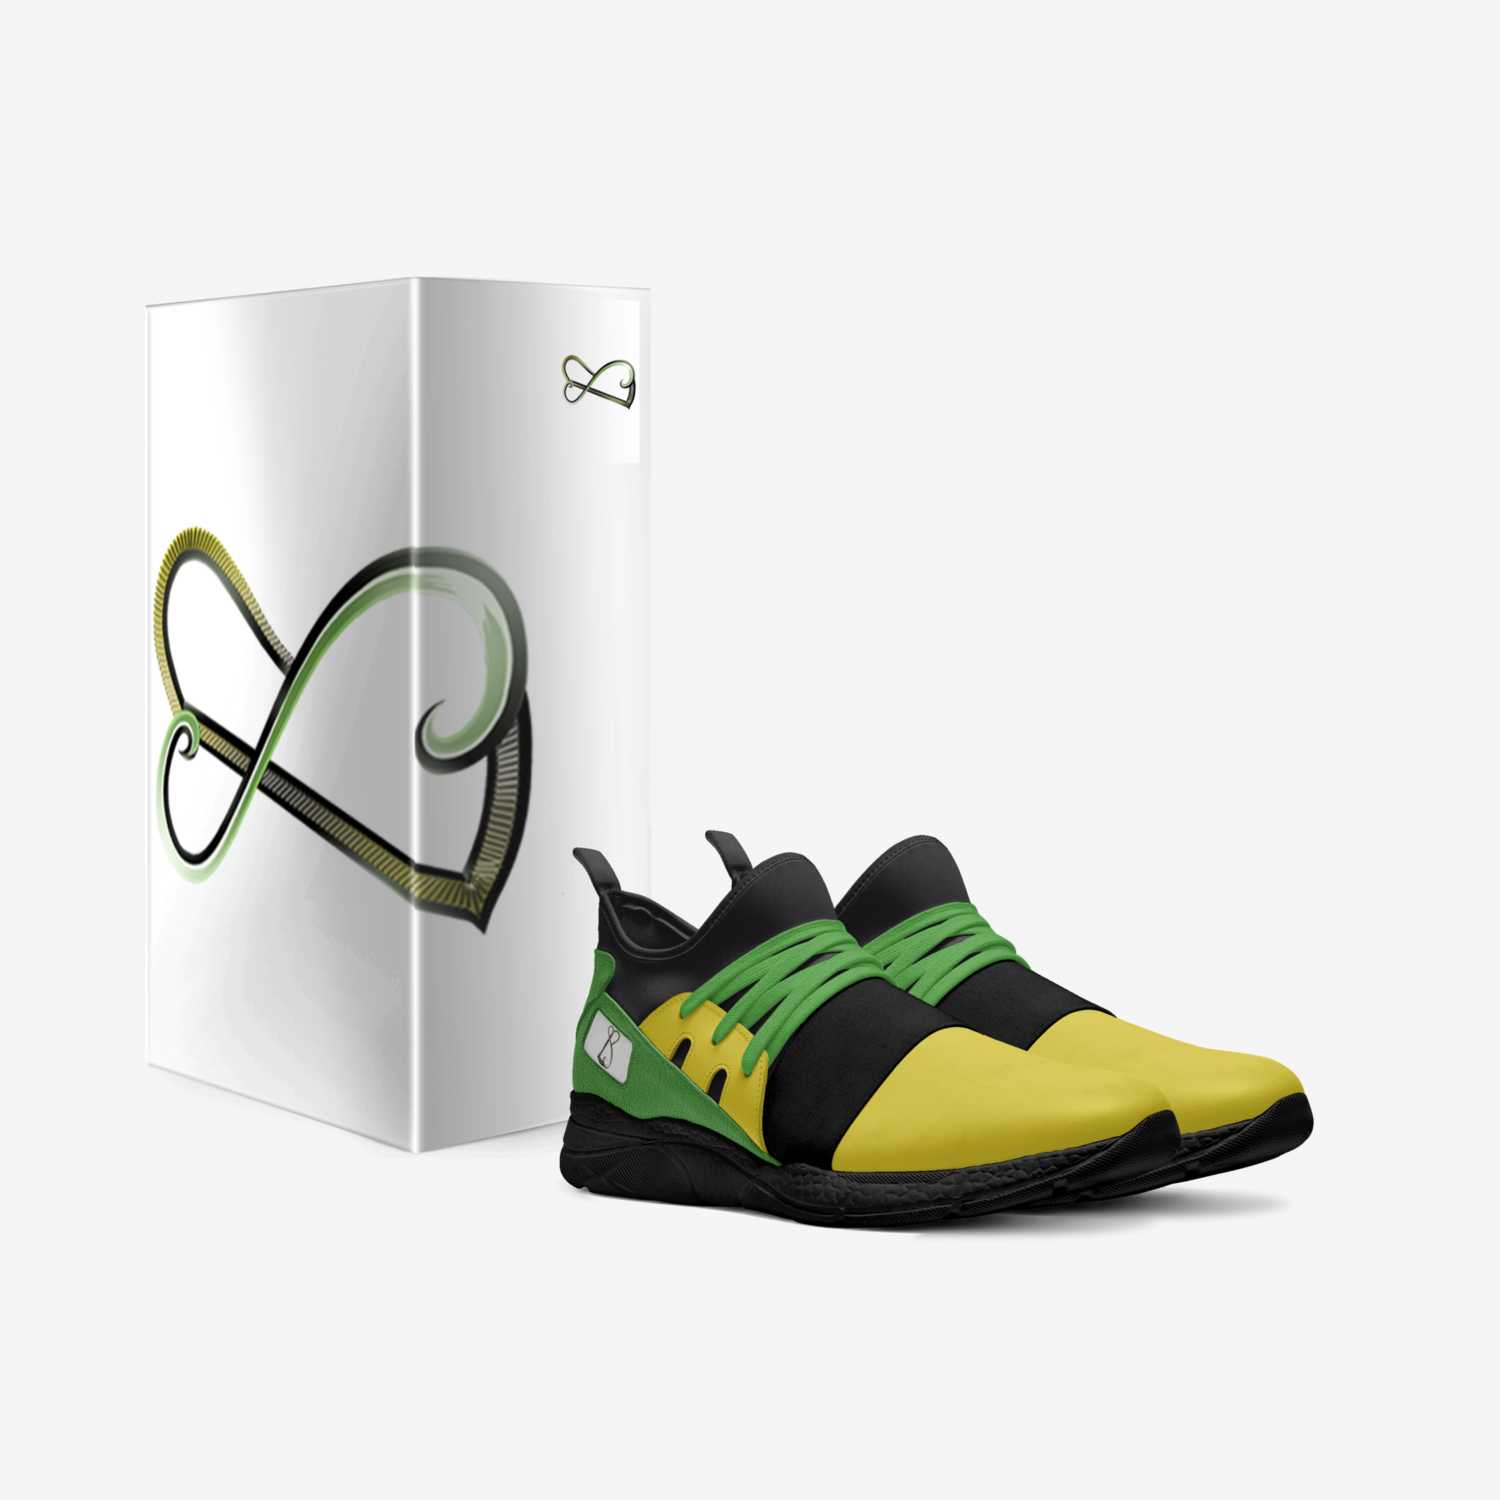 B.Scaduchi custom made in Italy shoes by B.scaduchi Reid | Box view